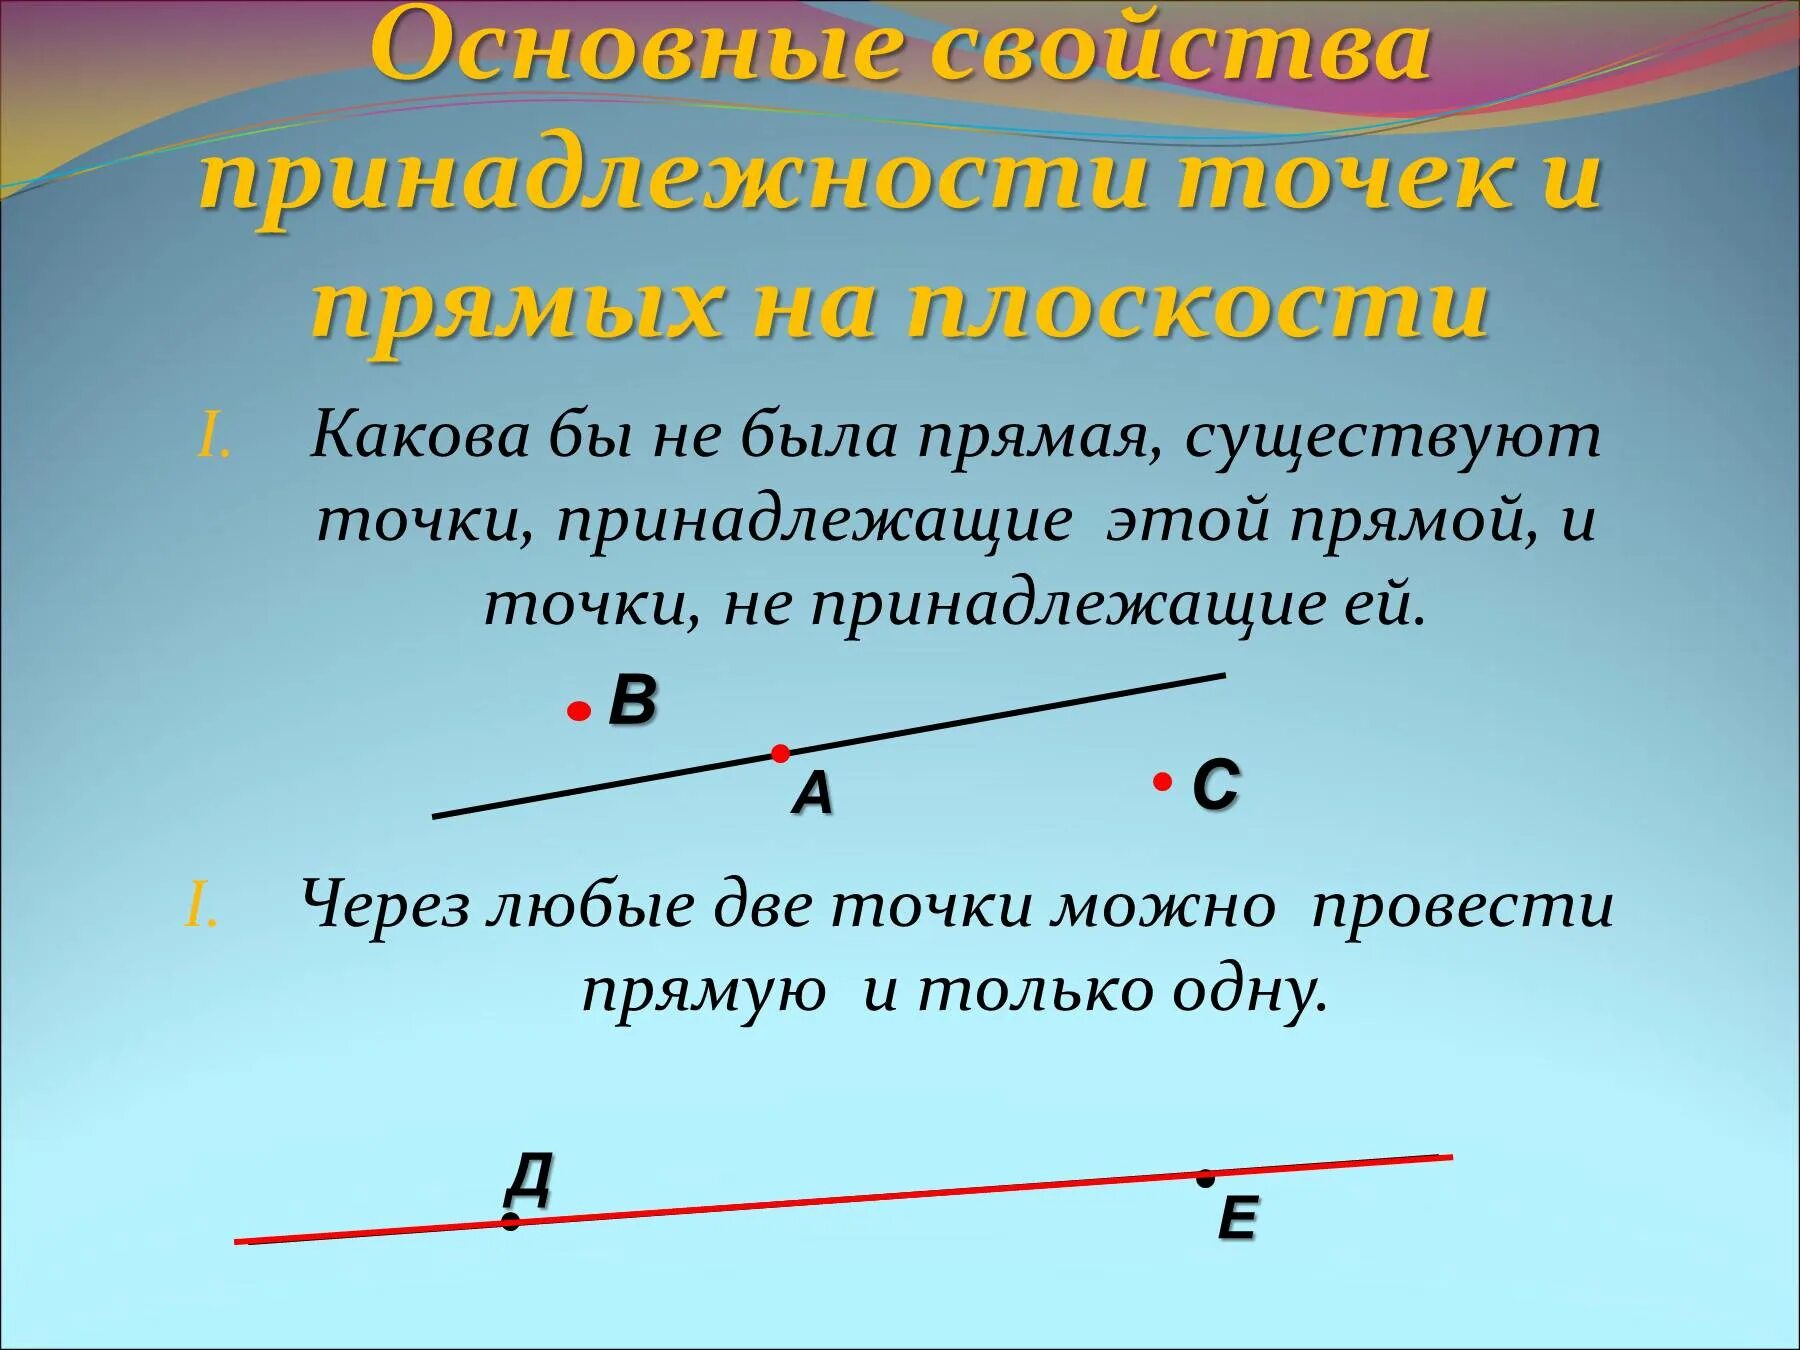 Прямая. Прямая и точки принадлежащие этой прямой. Основное свойство принадлежности точек и прямых. Точка на прямой.